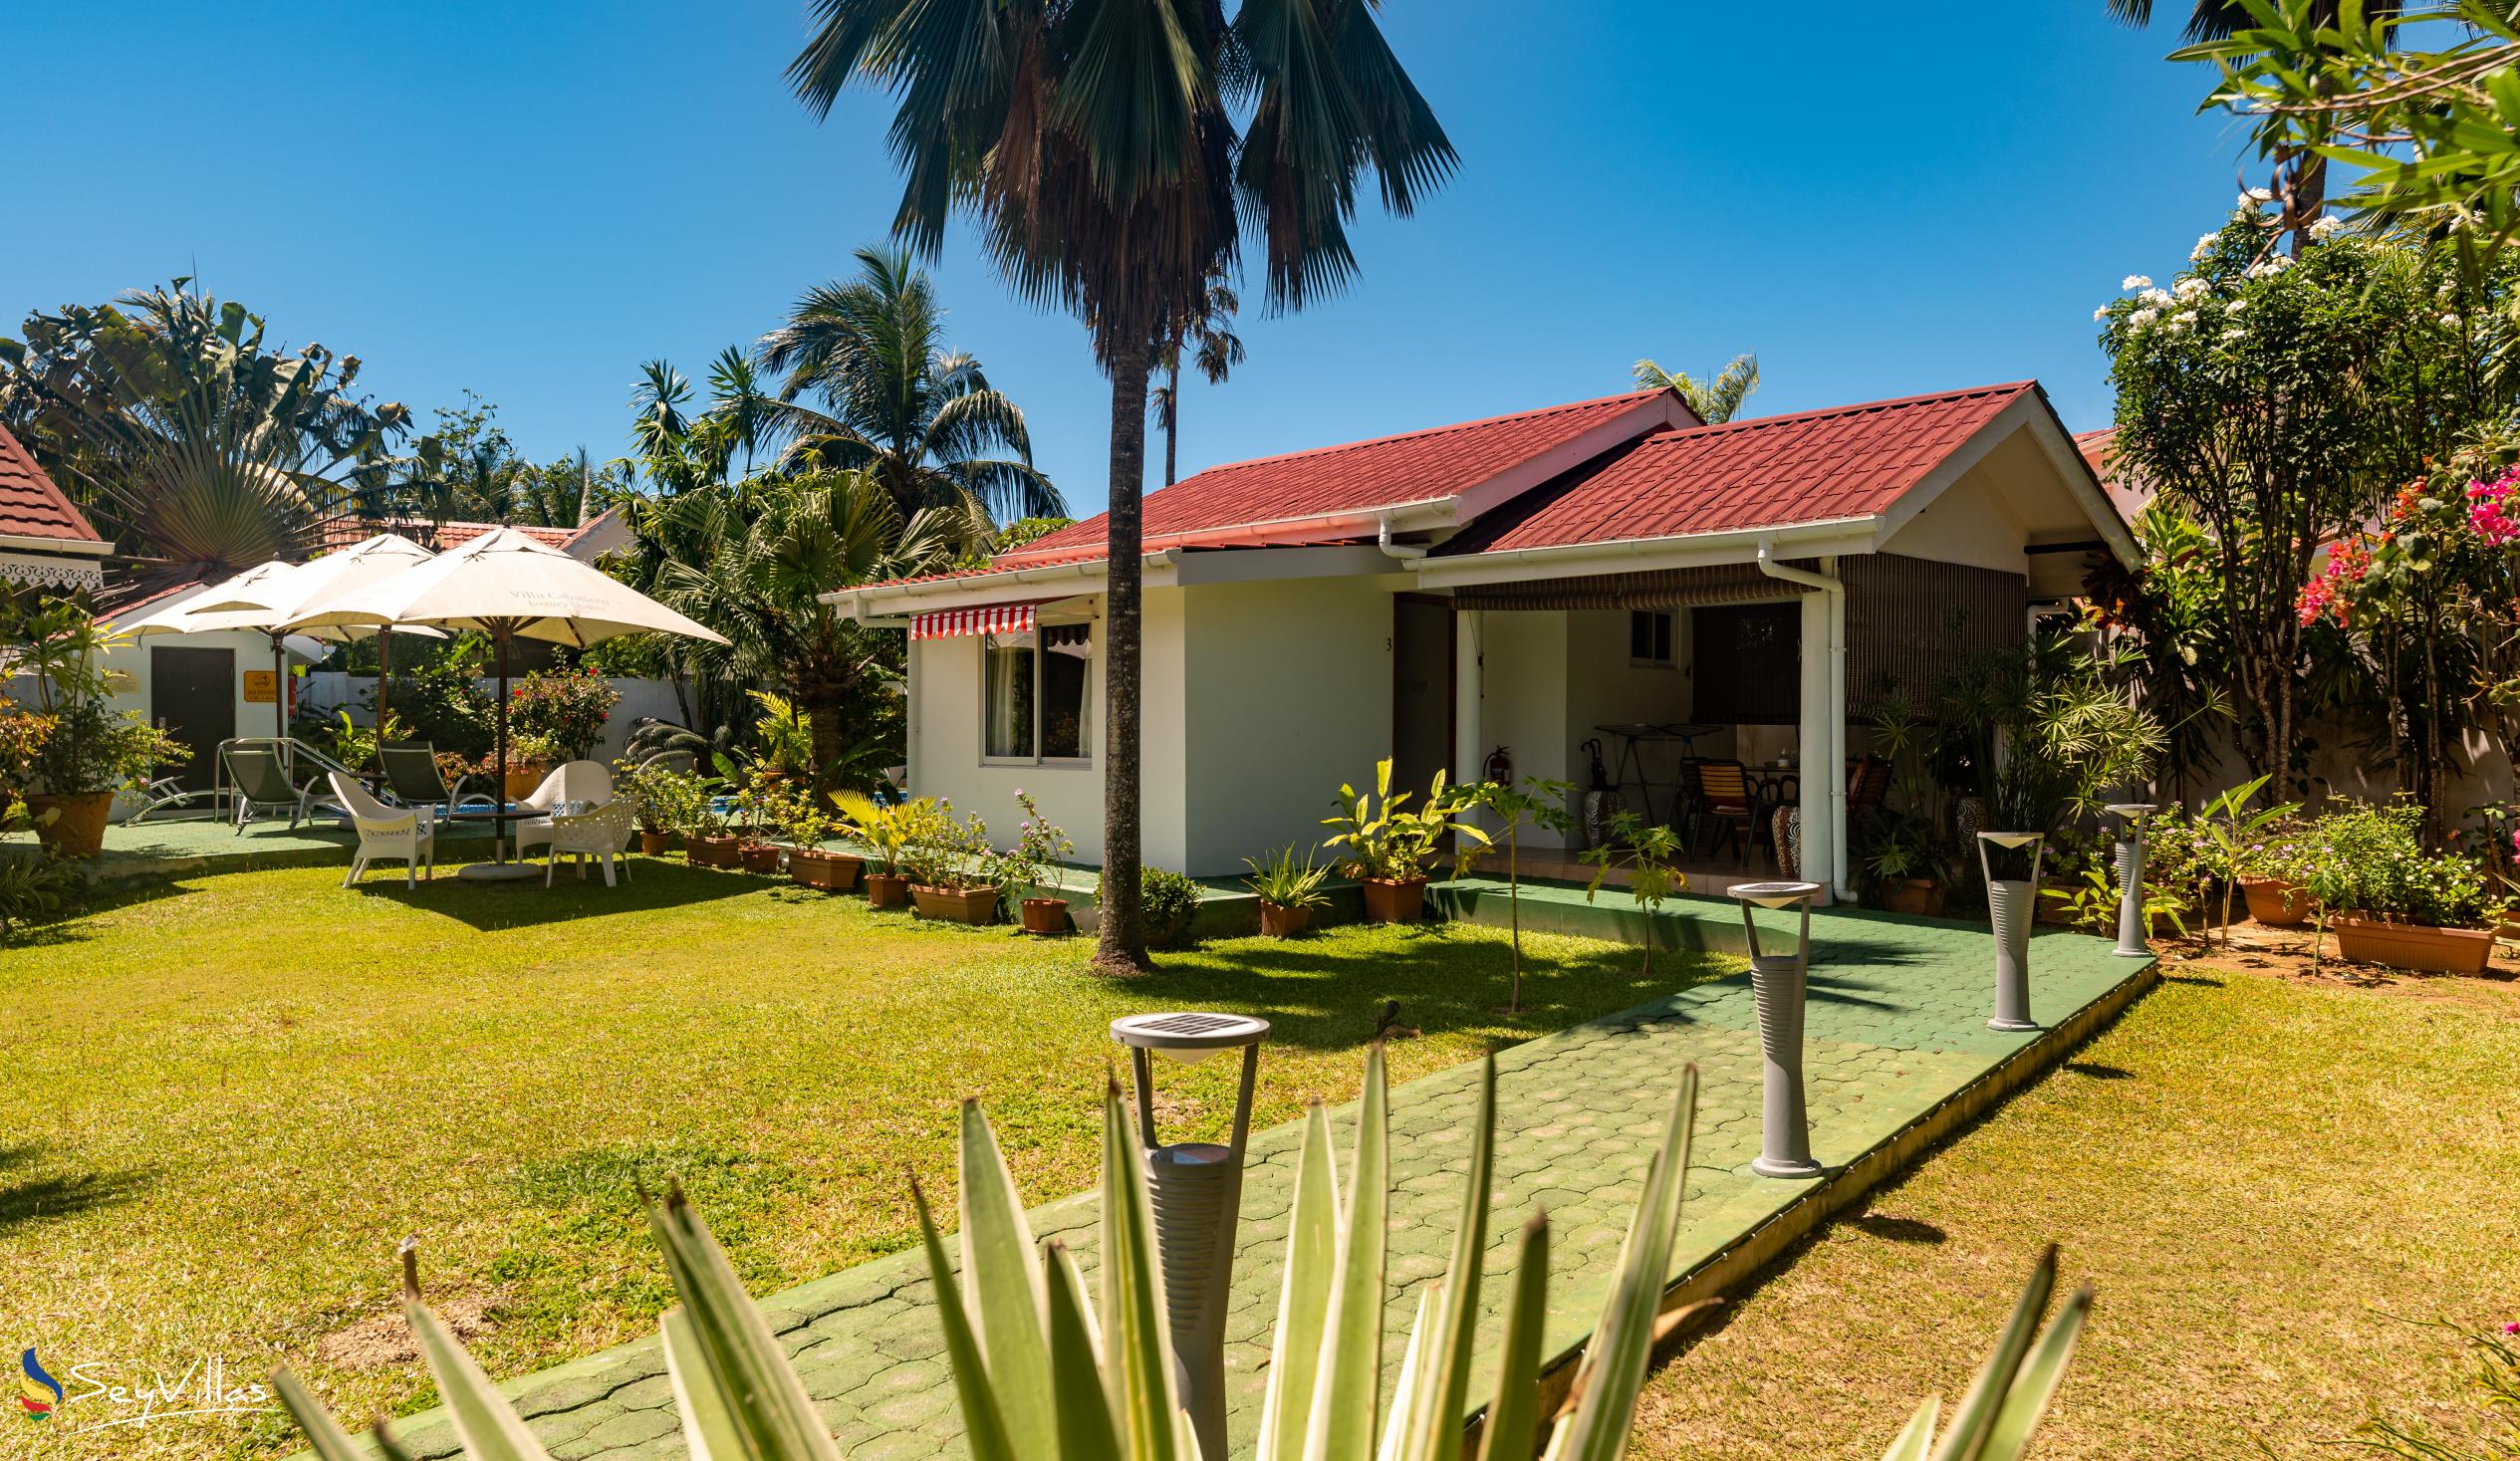 Foto 63: Villa Caballero - Chambre Standard - Mahé (Seychelles)